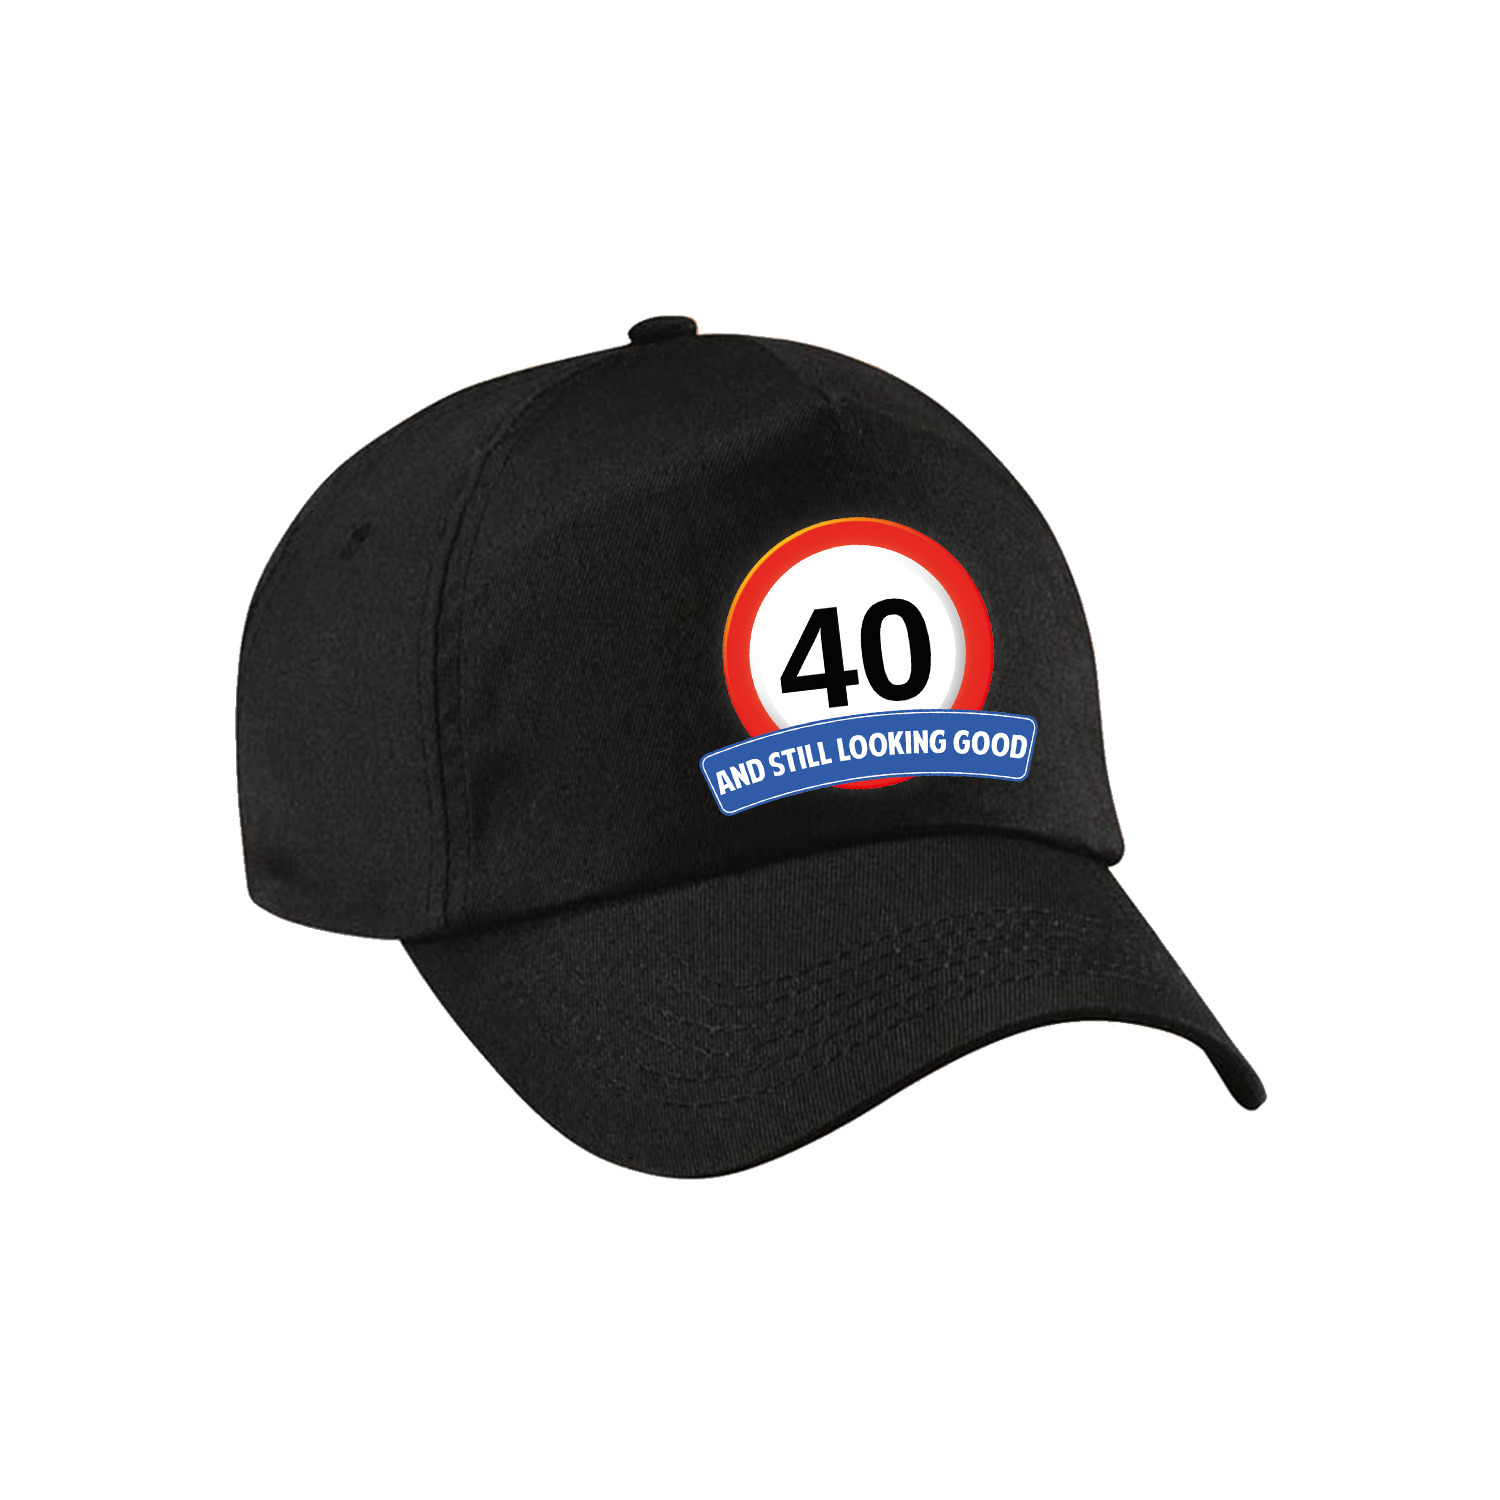 40 and still looking good stopbord pet-cap zwart voor volwassenen